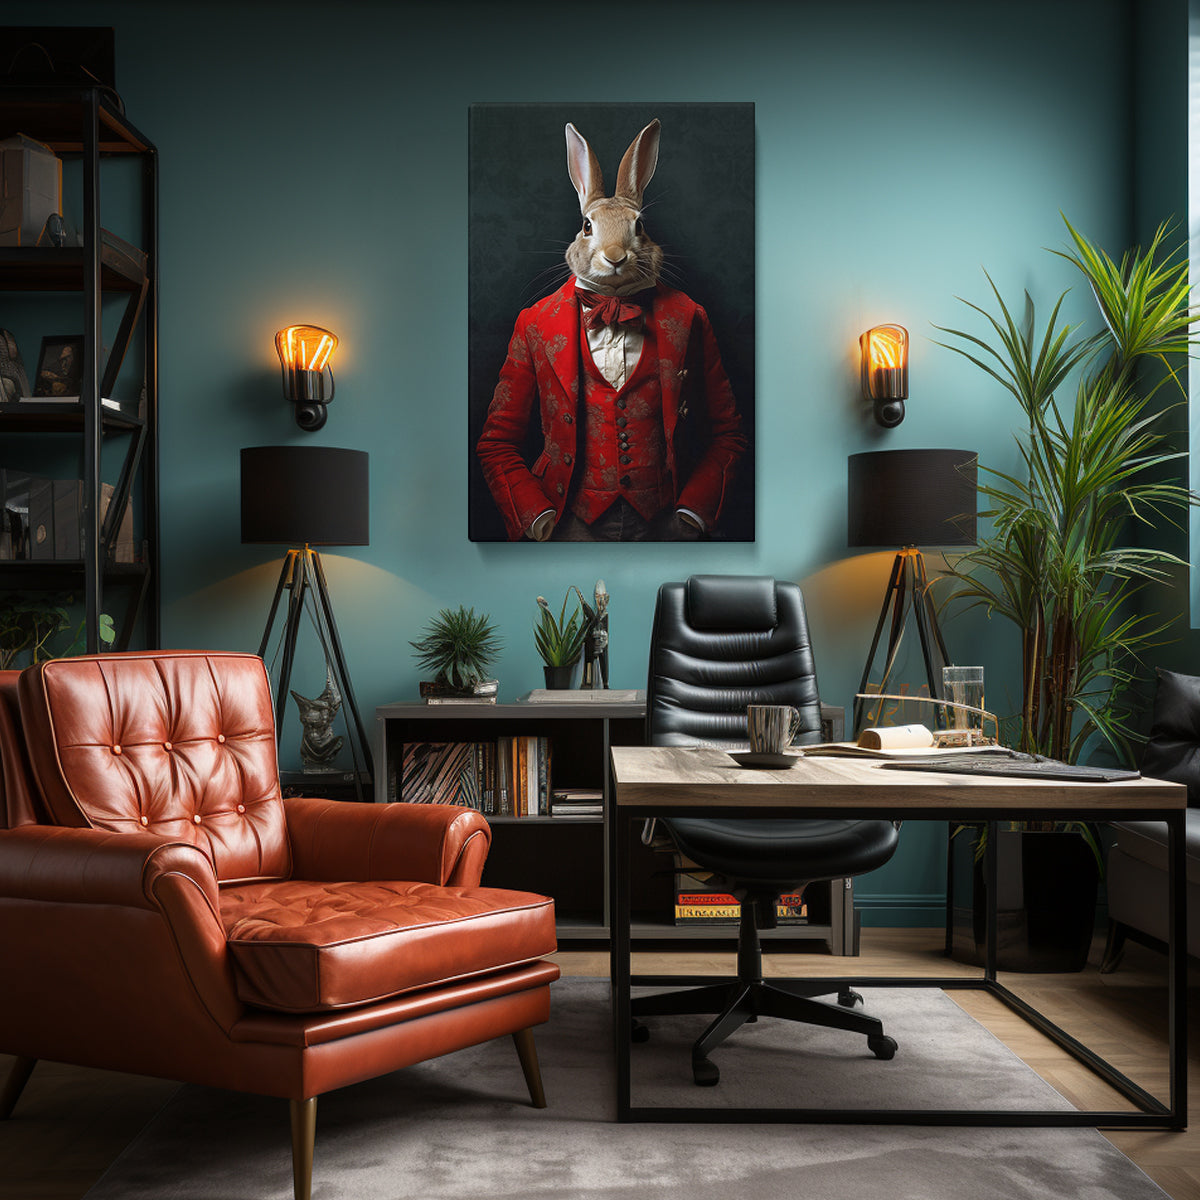 Chic Anthropomorphic Rabbit Portrait Canvas Print ArtLexy   